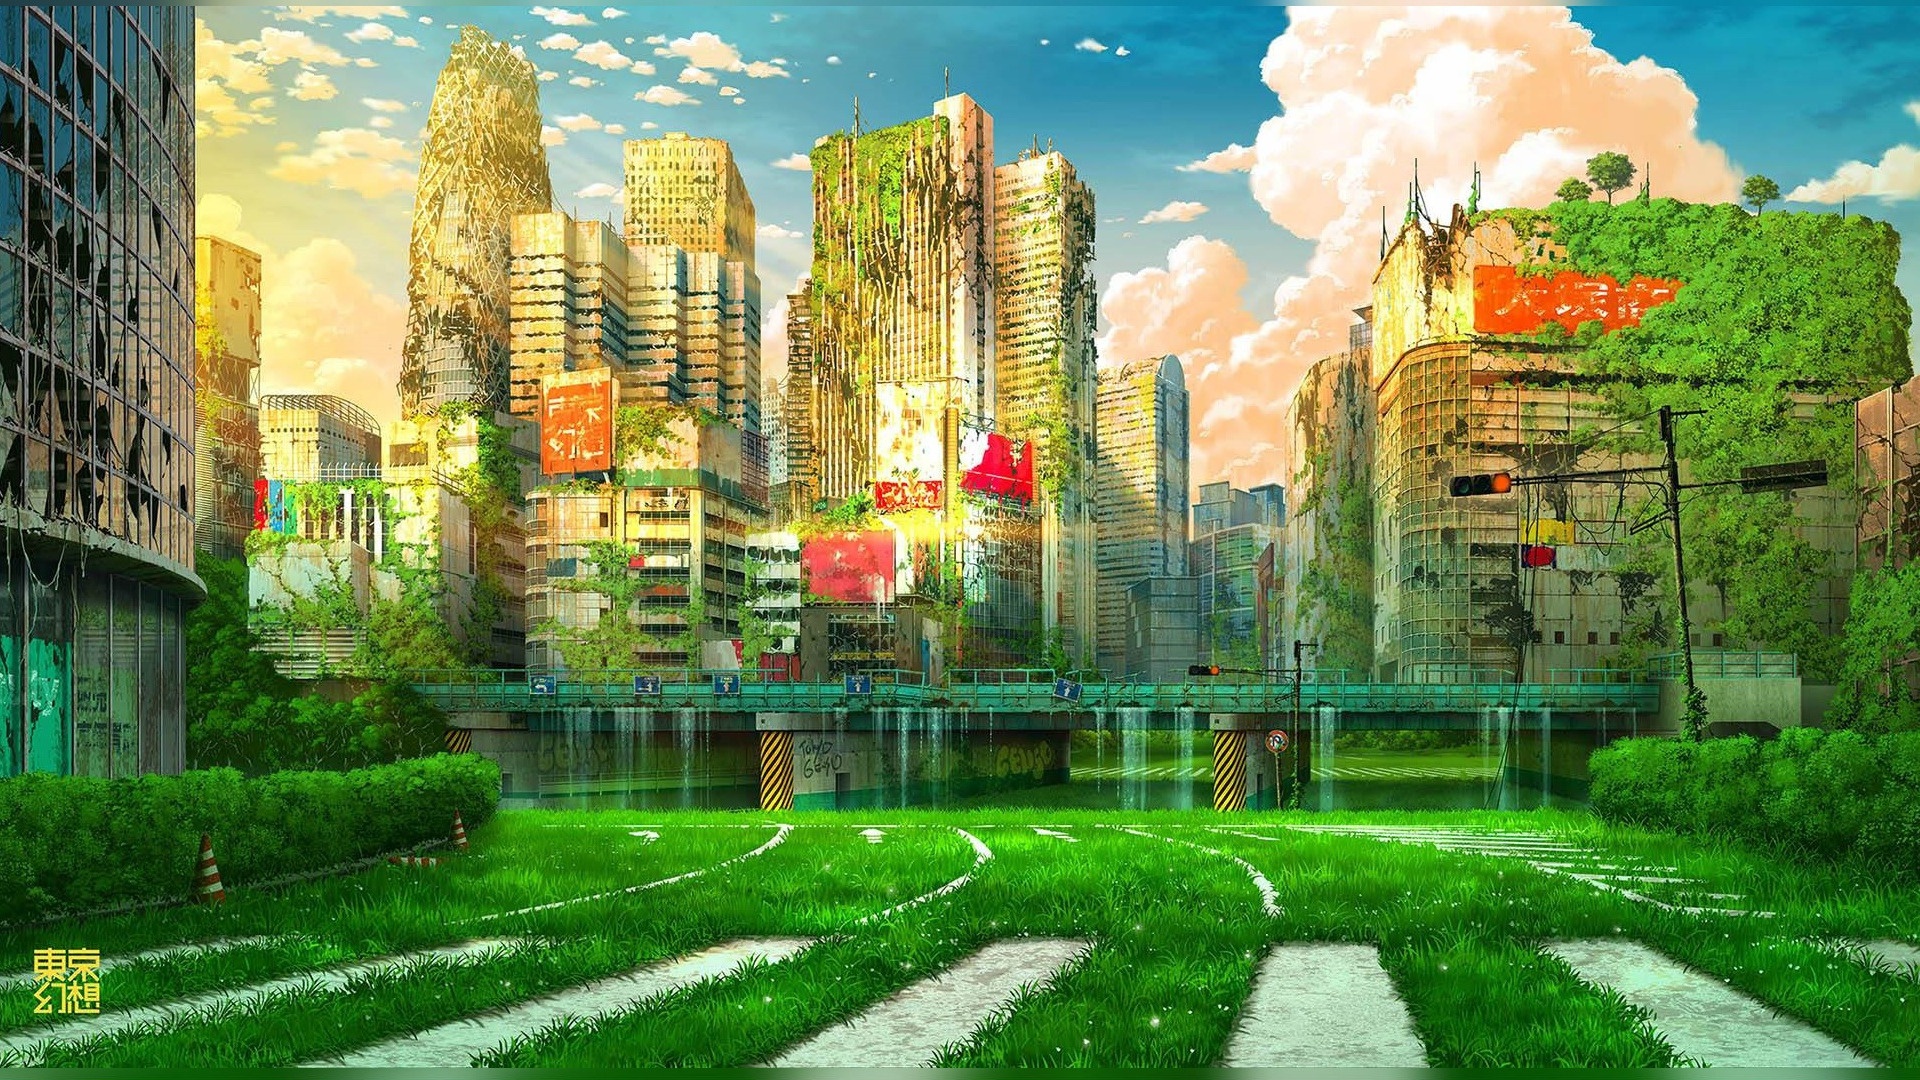 Apocalyptic City Background